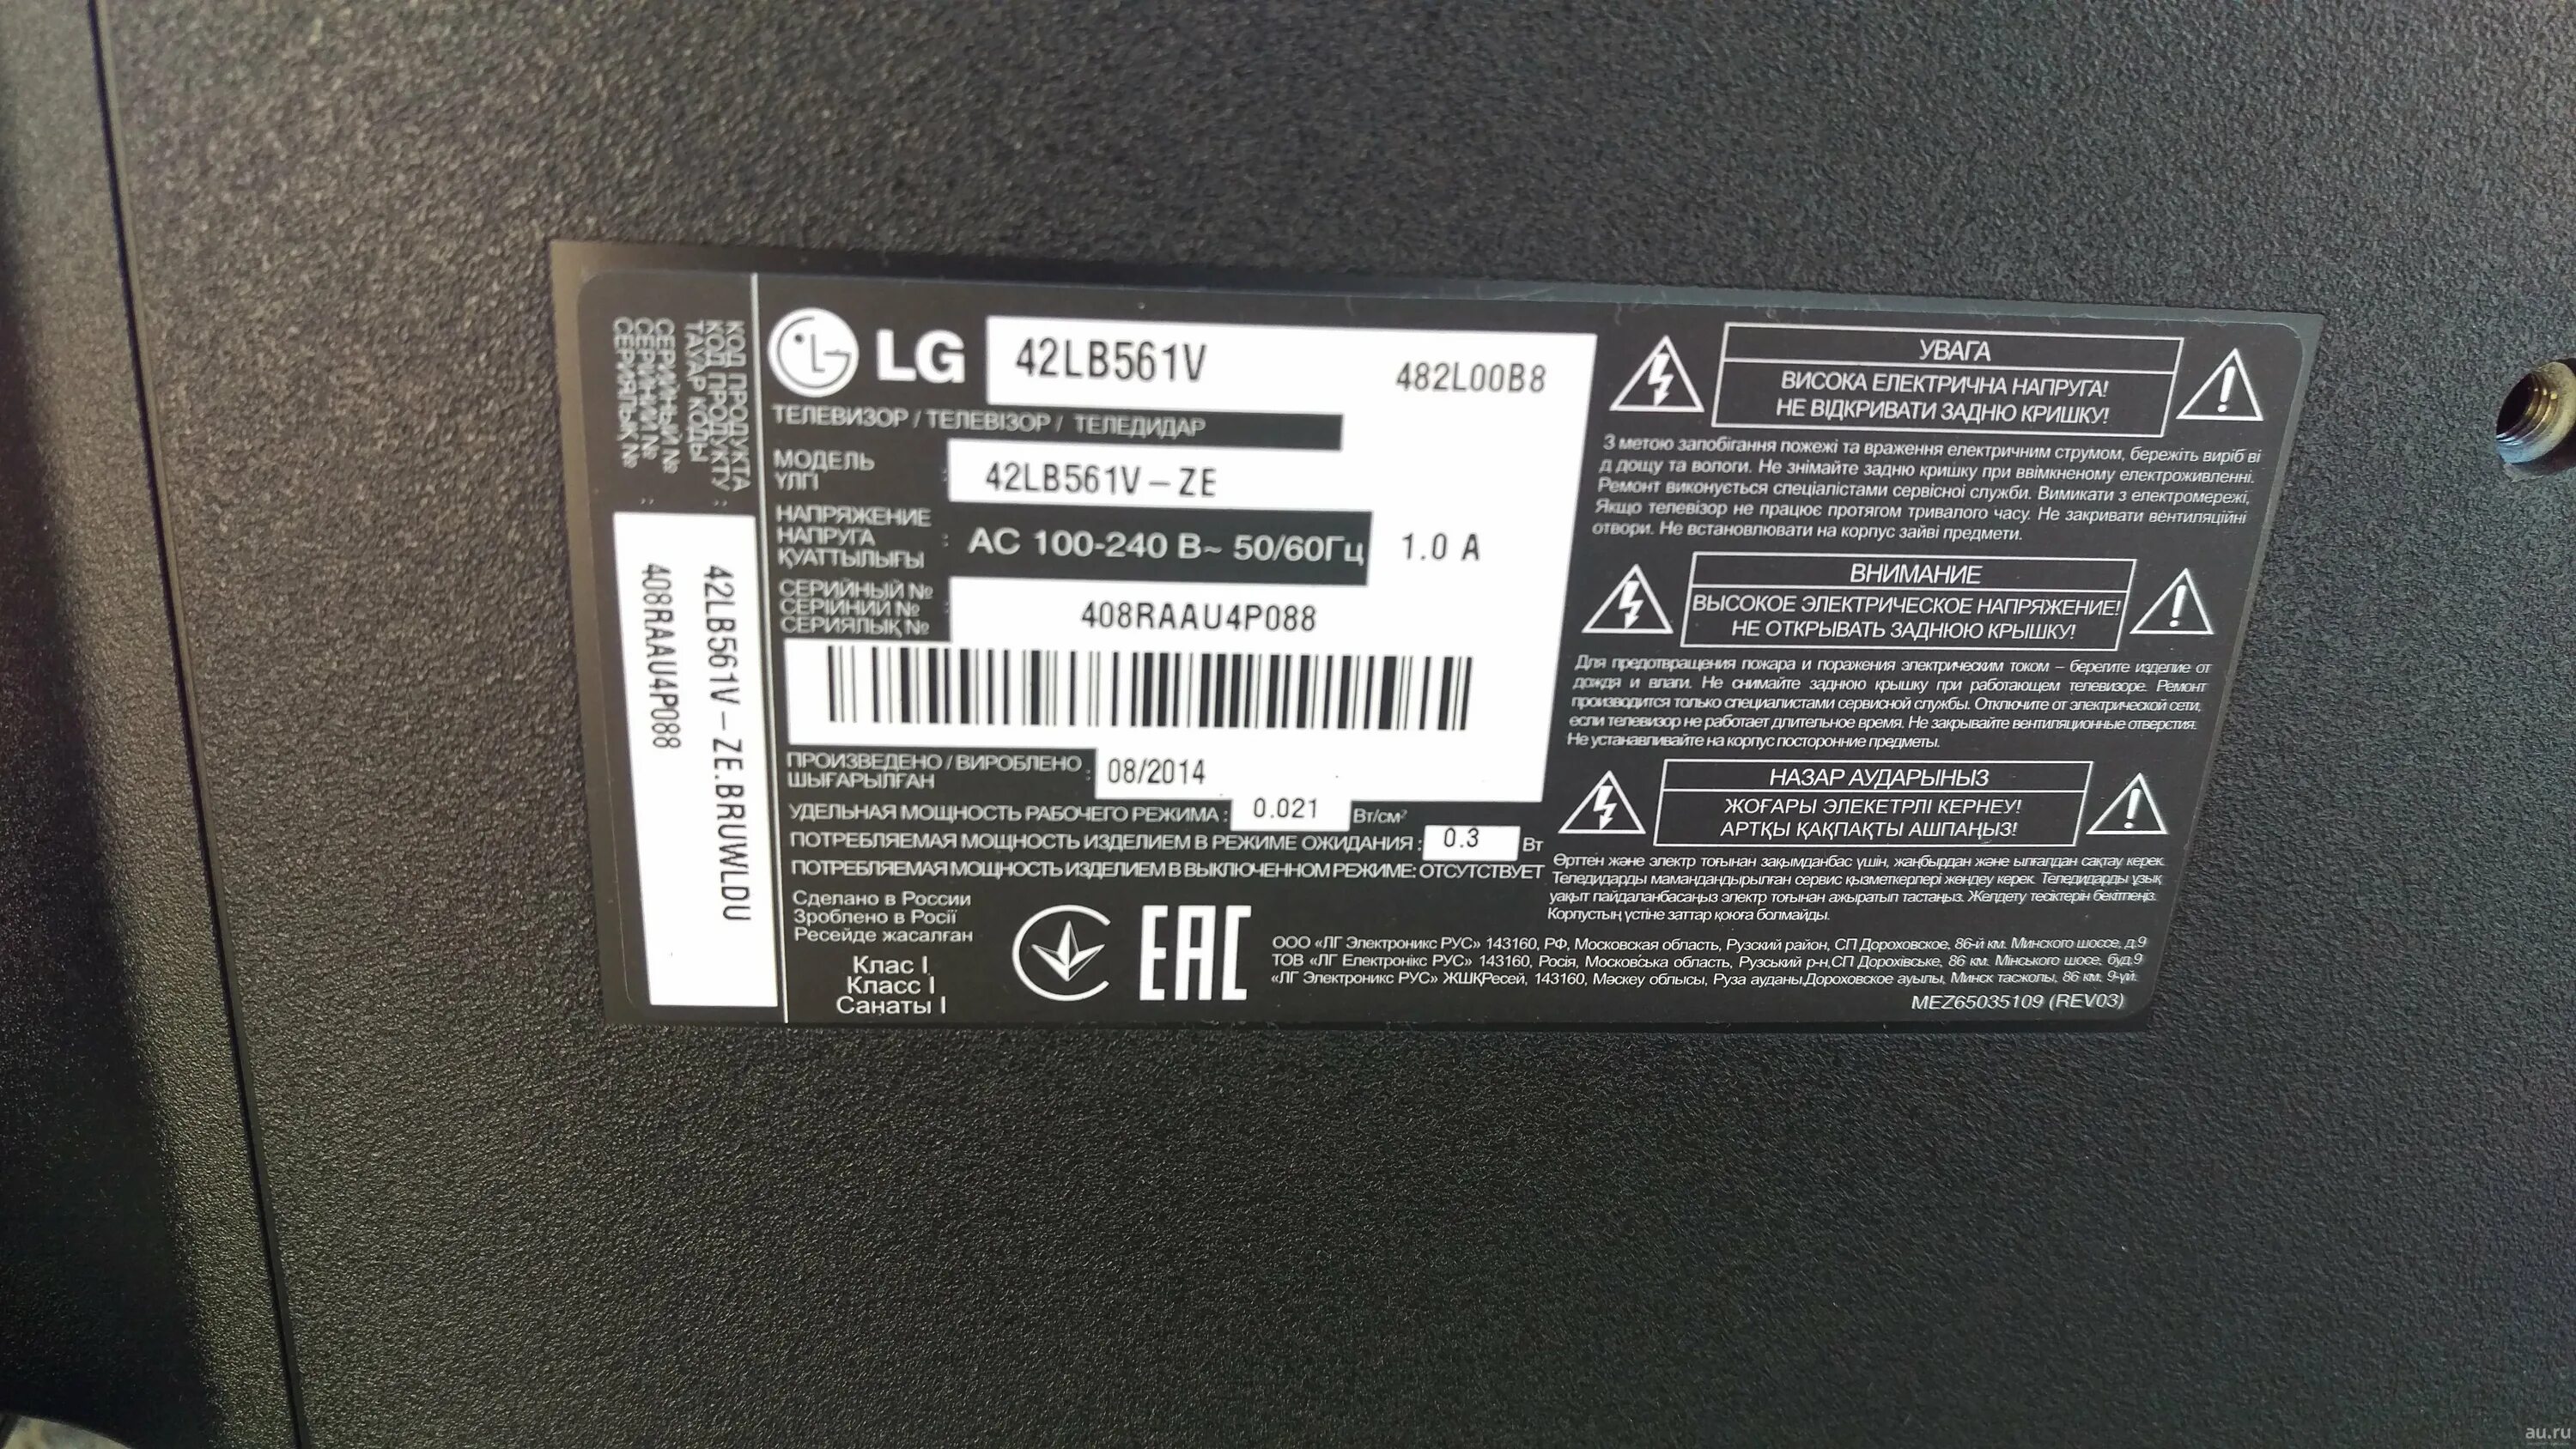 Телевизор LG 42lb561v. Телевизор LG 42 lb 561. Телевизор LG 42lb651v. Телевизор LG 42lb561v 42".